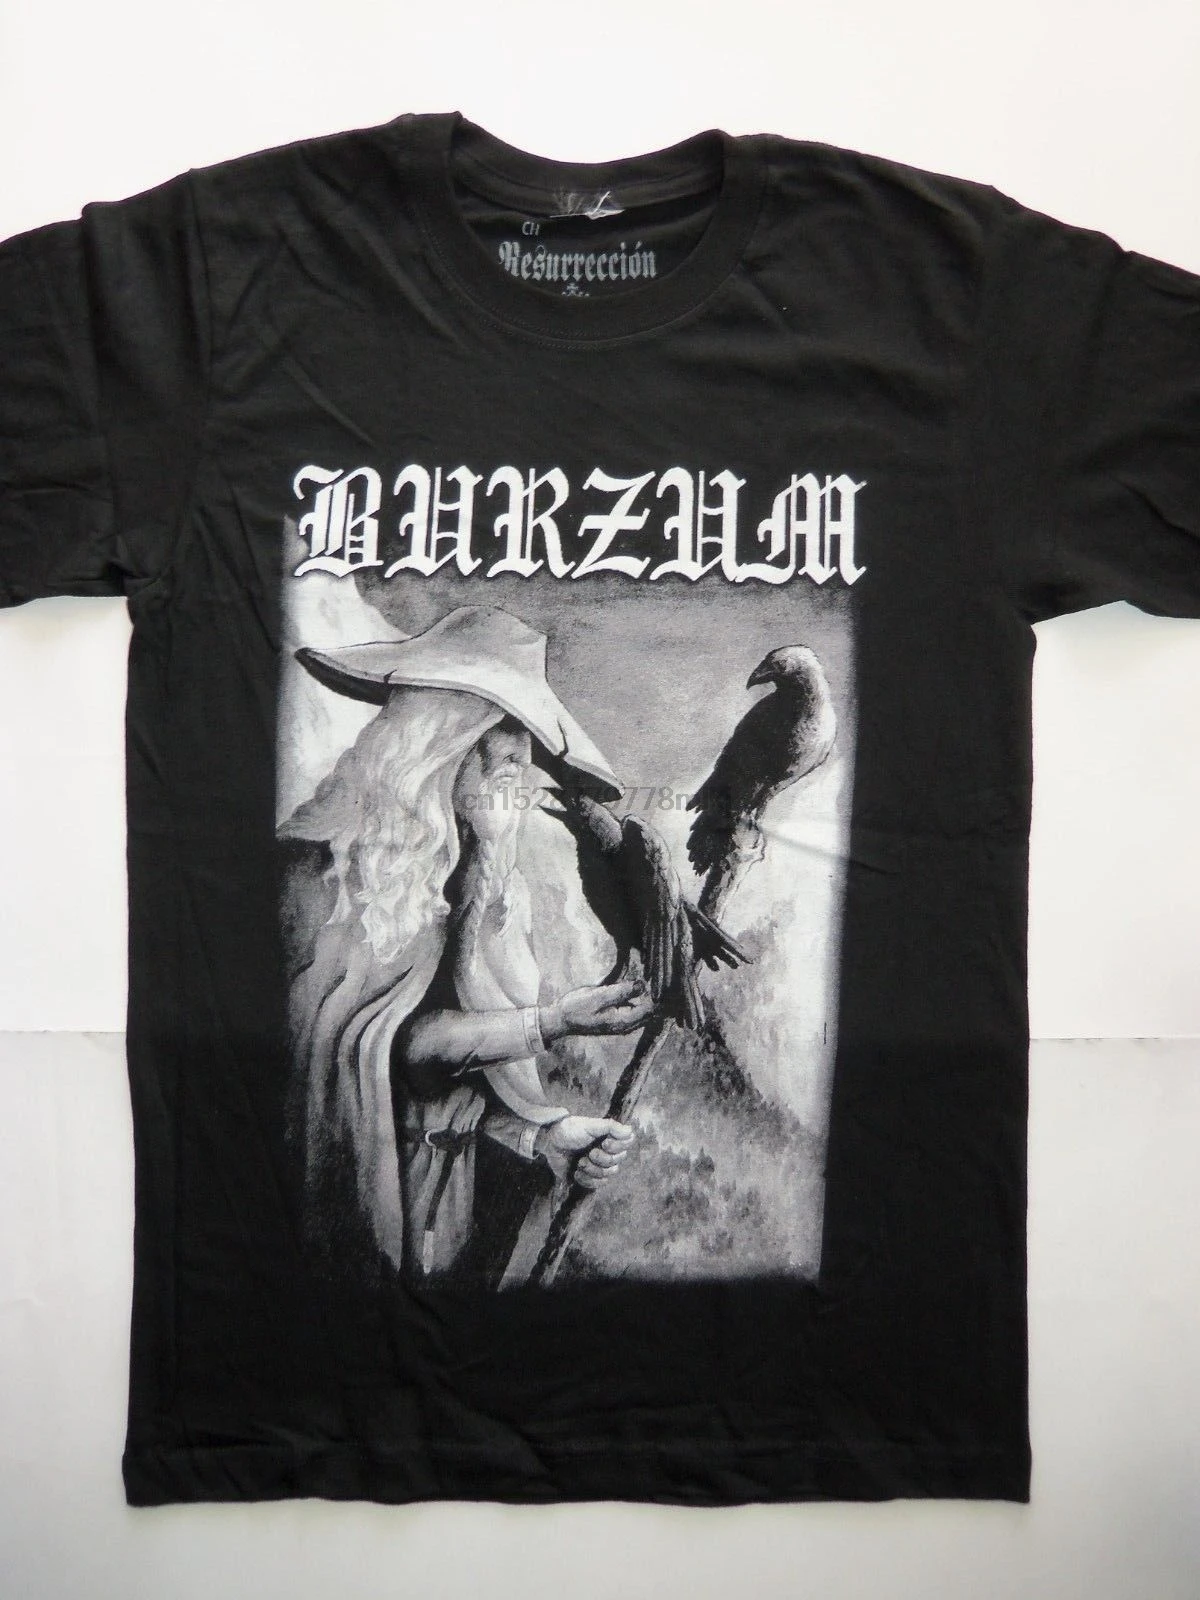 1BURZUM футболка темная похорон Темный трон Mayhem император Bathory Filosofem Aske модные